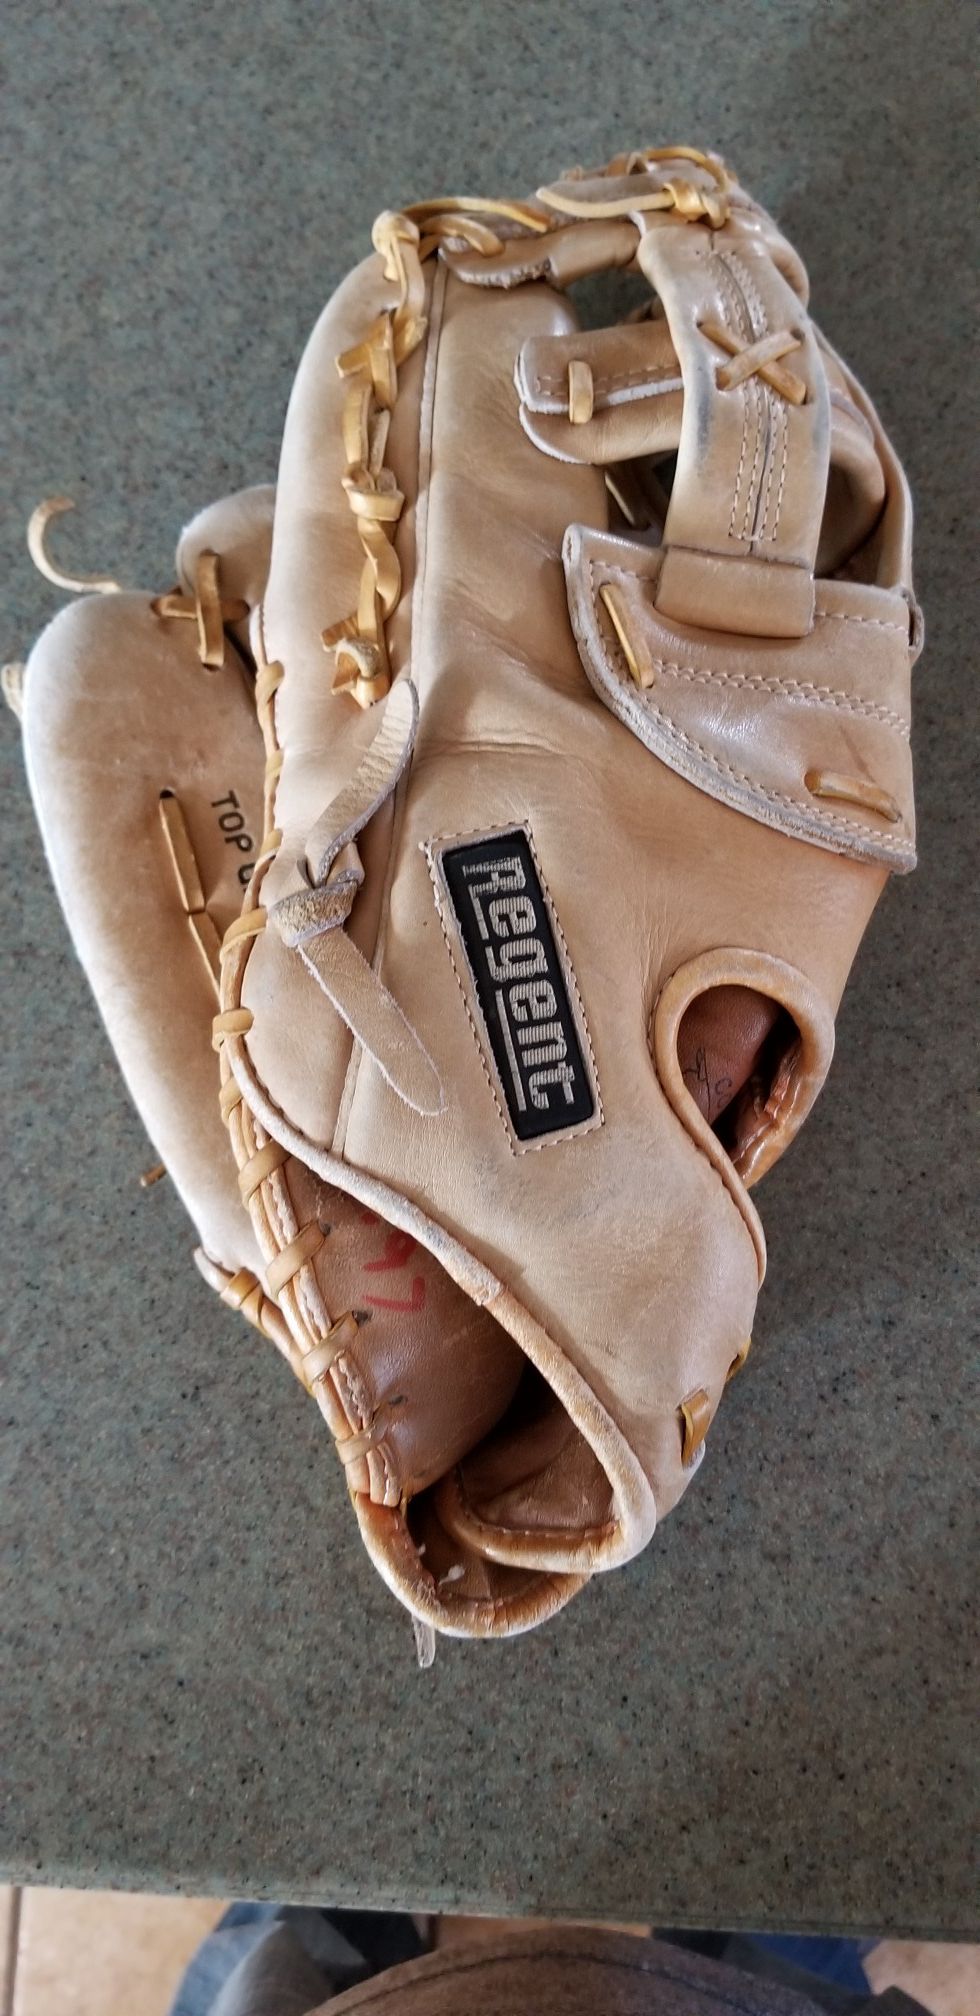 12" Lefty left baseball softball glove